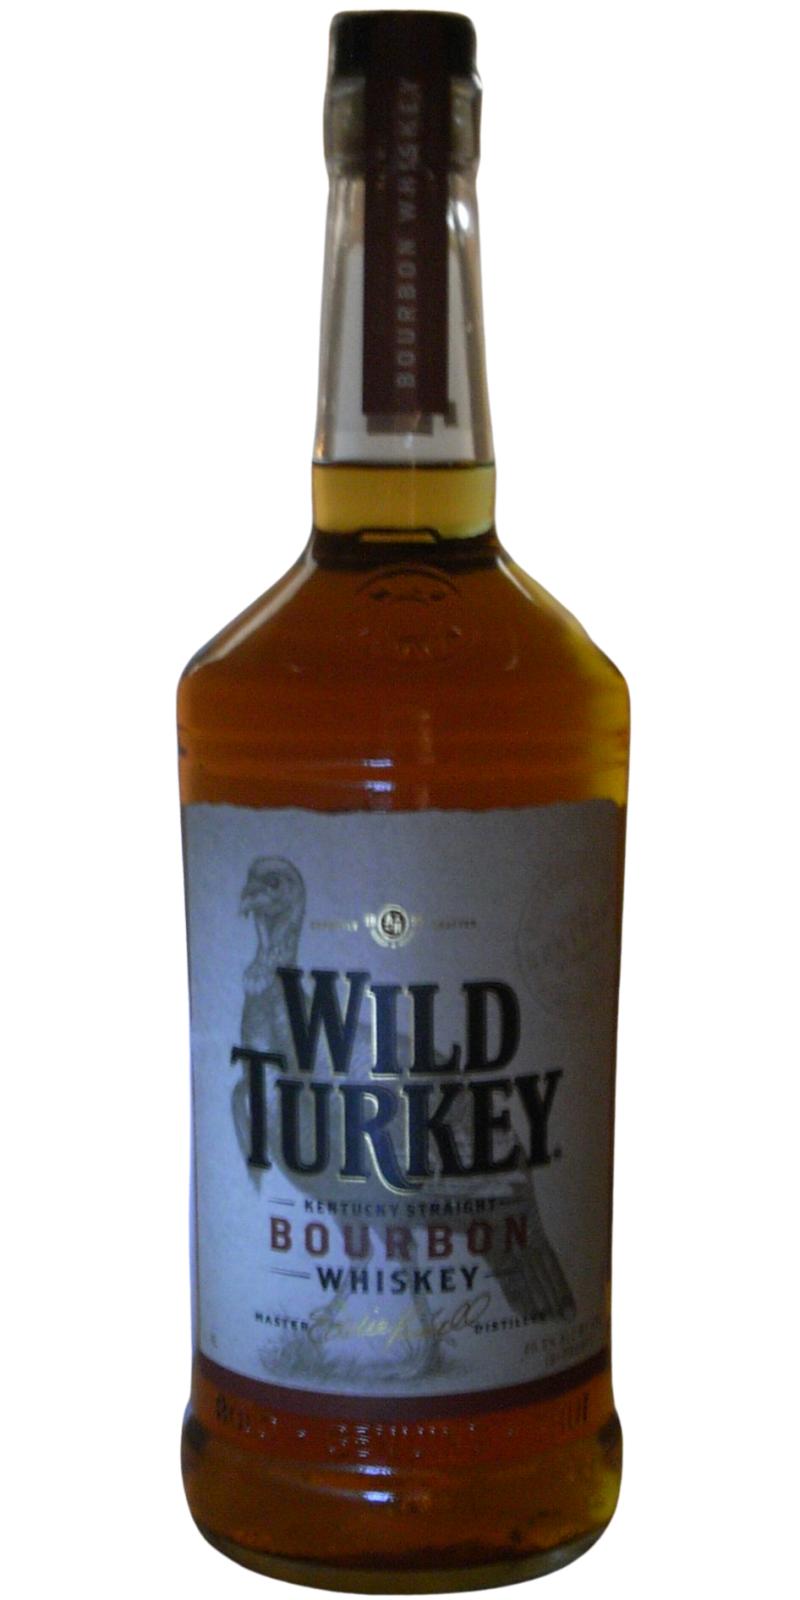 Wild Turkey 81 Proof